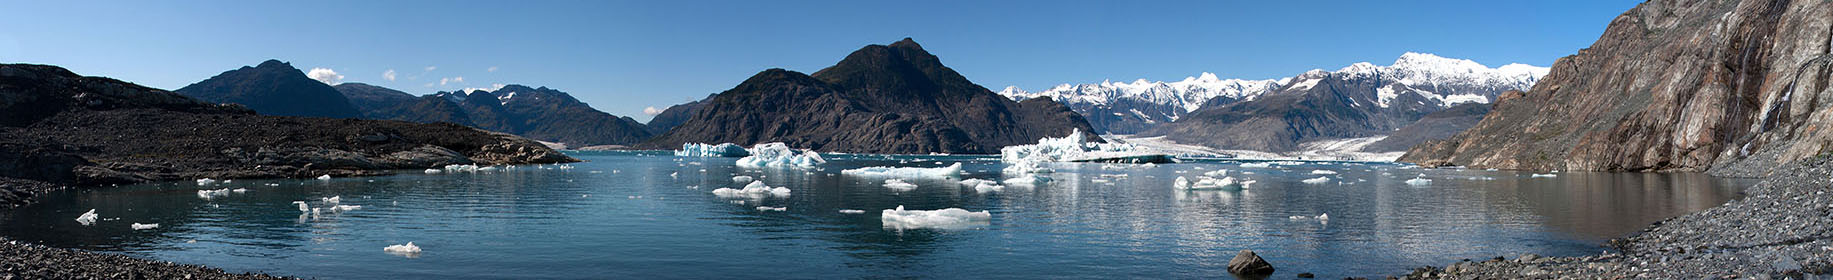 Alaska lake and icebergs